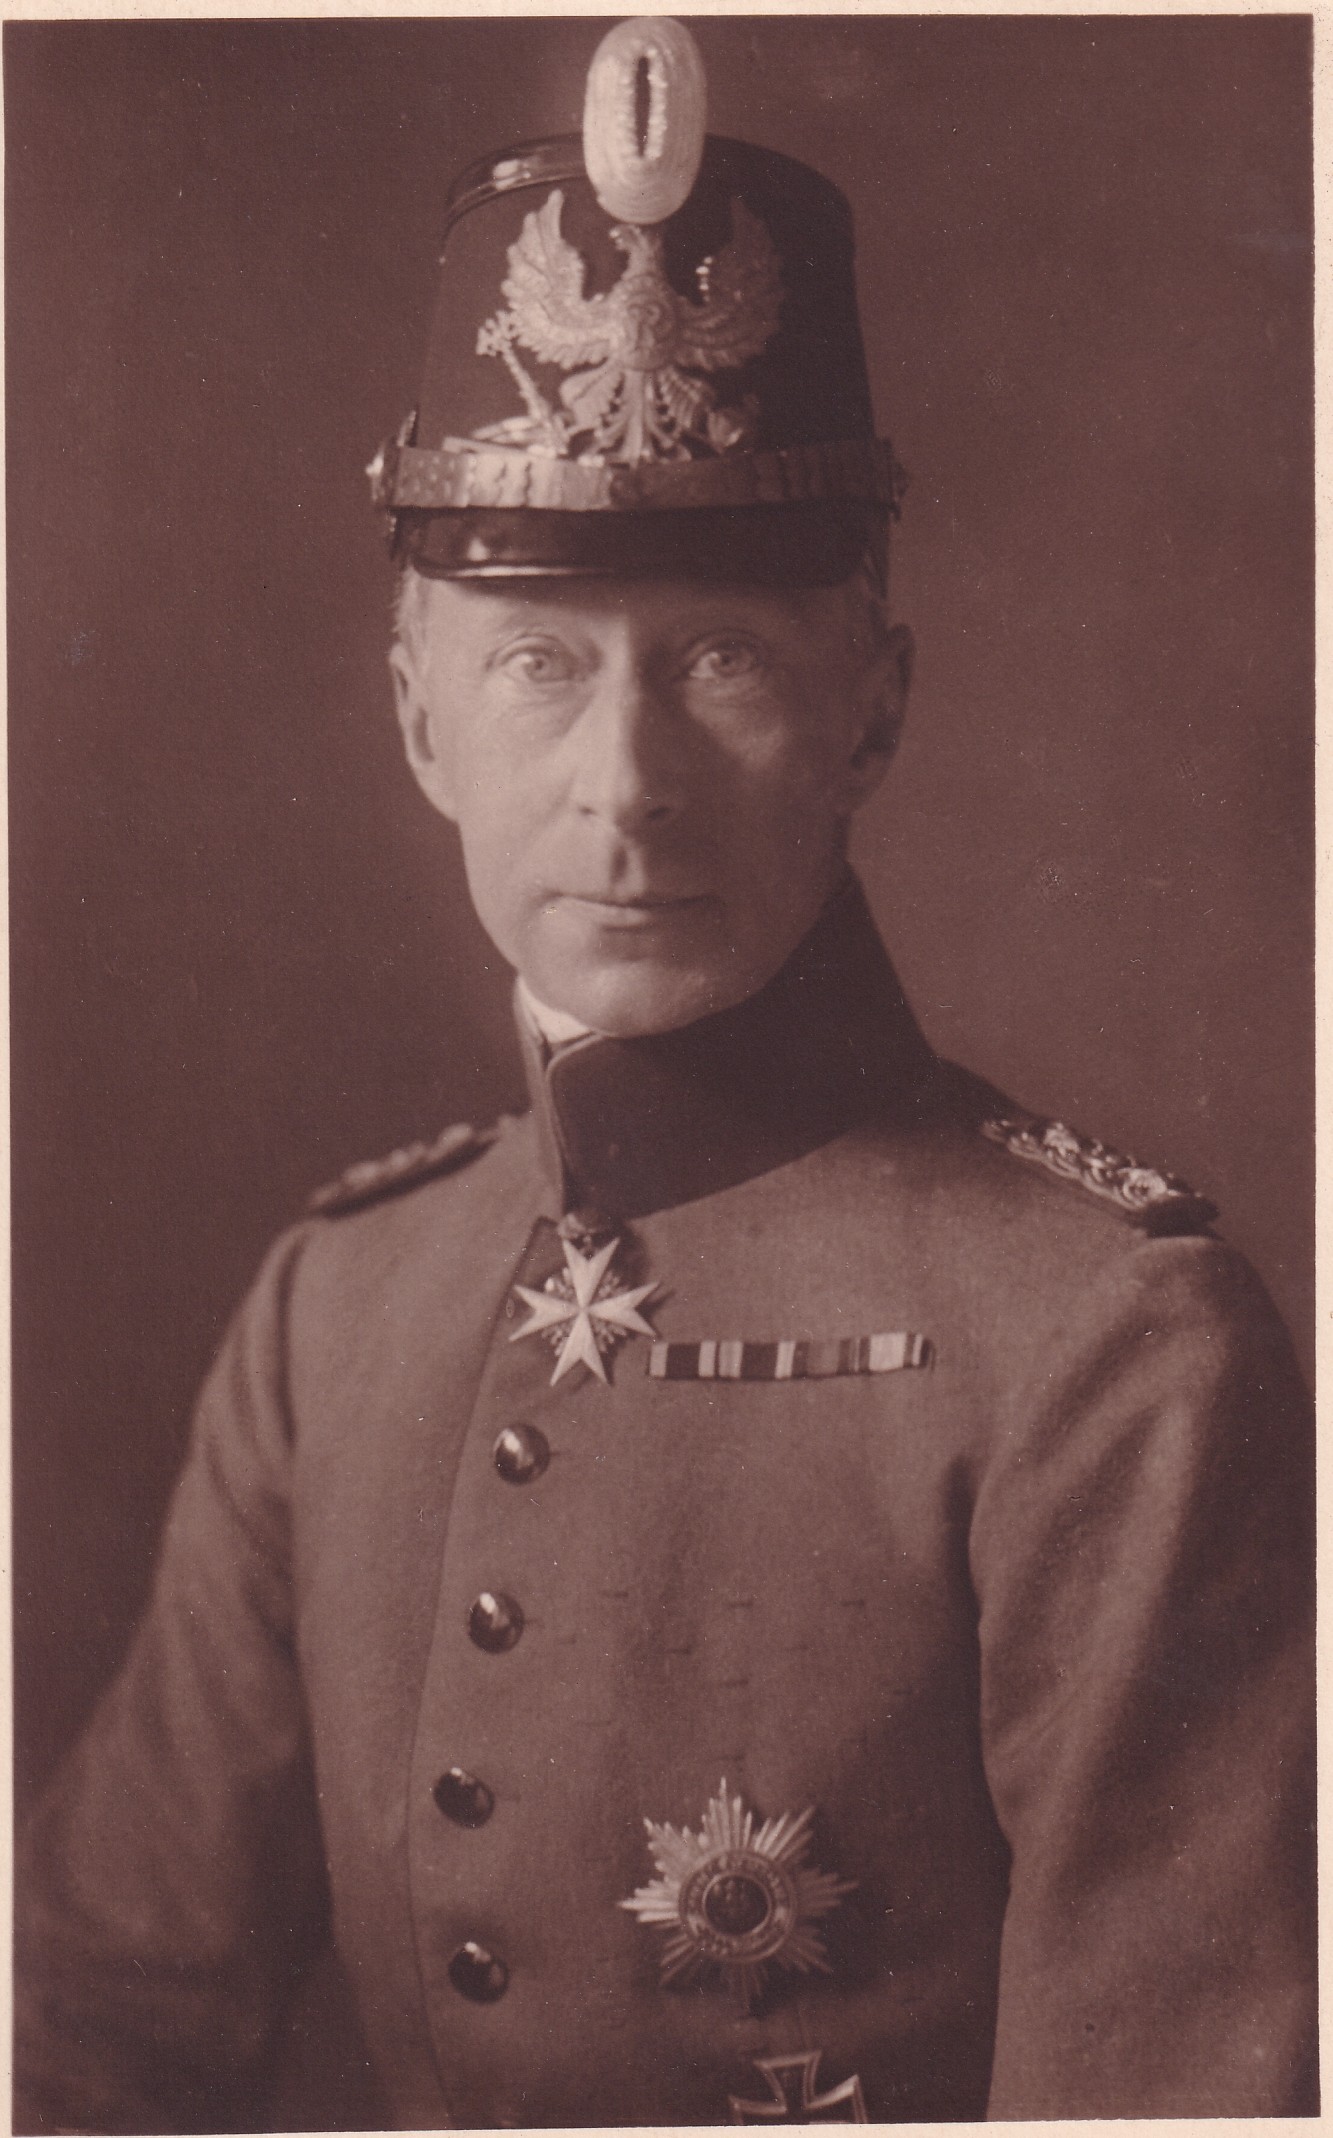 Bildpostkarte mit Foto des ehemaligen Kronprinzen Wilhelm in Uniform, 1932 (?) (Schloß Wernigerode GmbH RR-F)